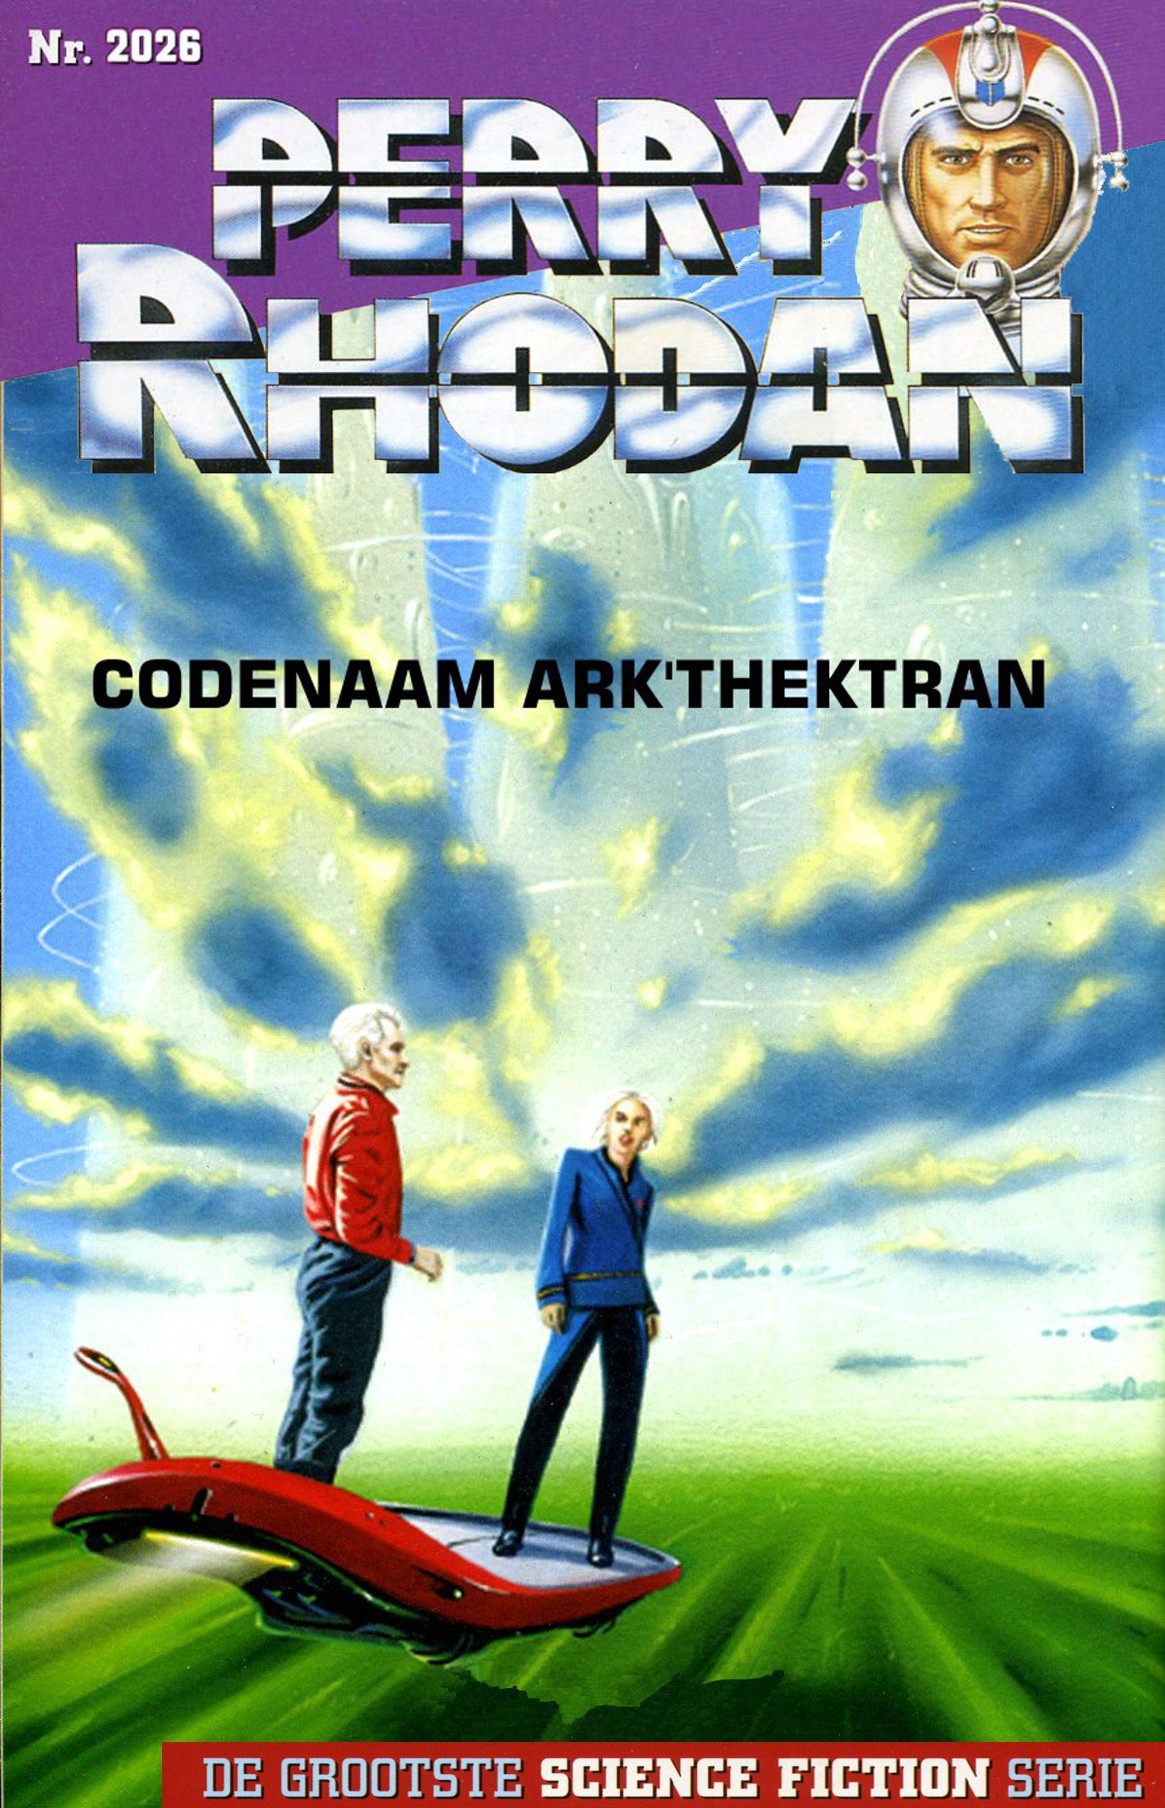 Perry Rhodan 2026 - Codenaam Ark'thektran